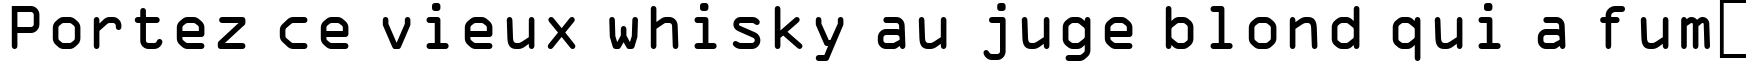 Пример написания шрифтом OCR-A BT текста на французском